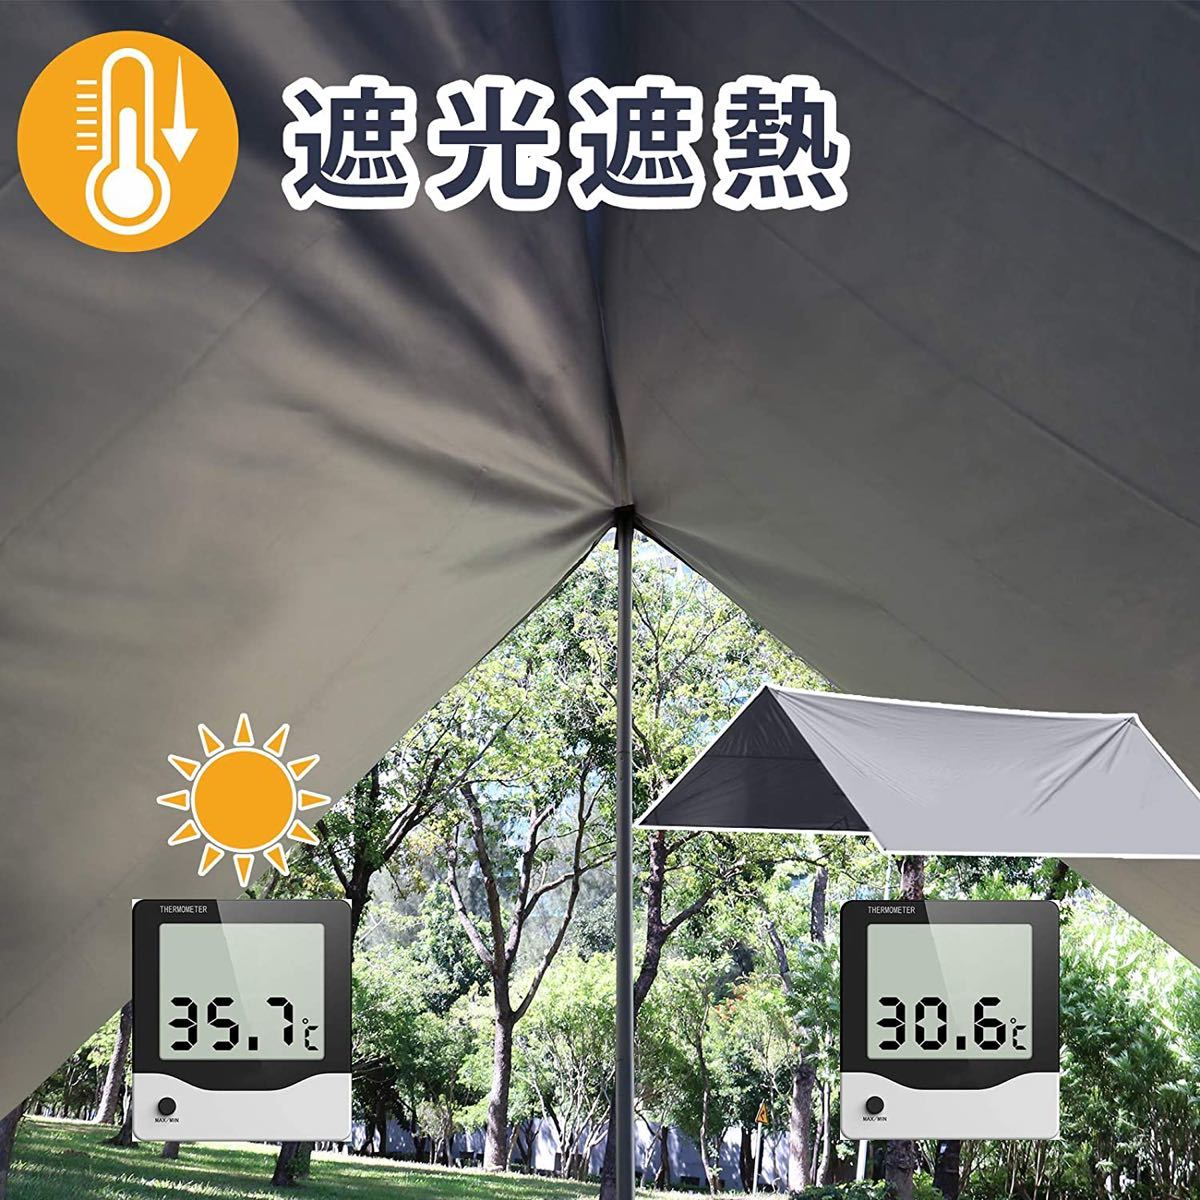 ★ラスト1点★タープテント 防水タープ 天幕 シェード テント 軽量 日よけ キャンプ アウトドア(3×4M) 紫外線カット